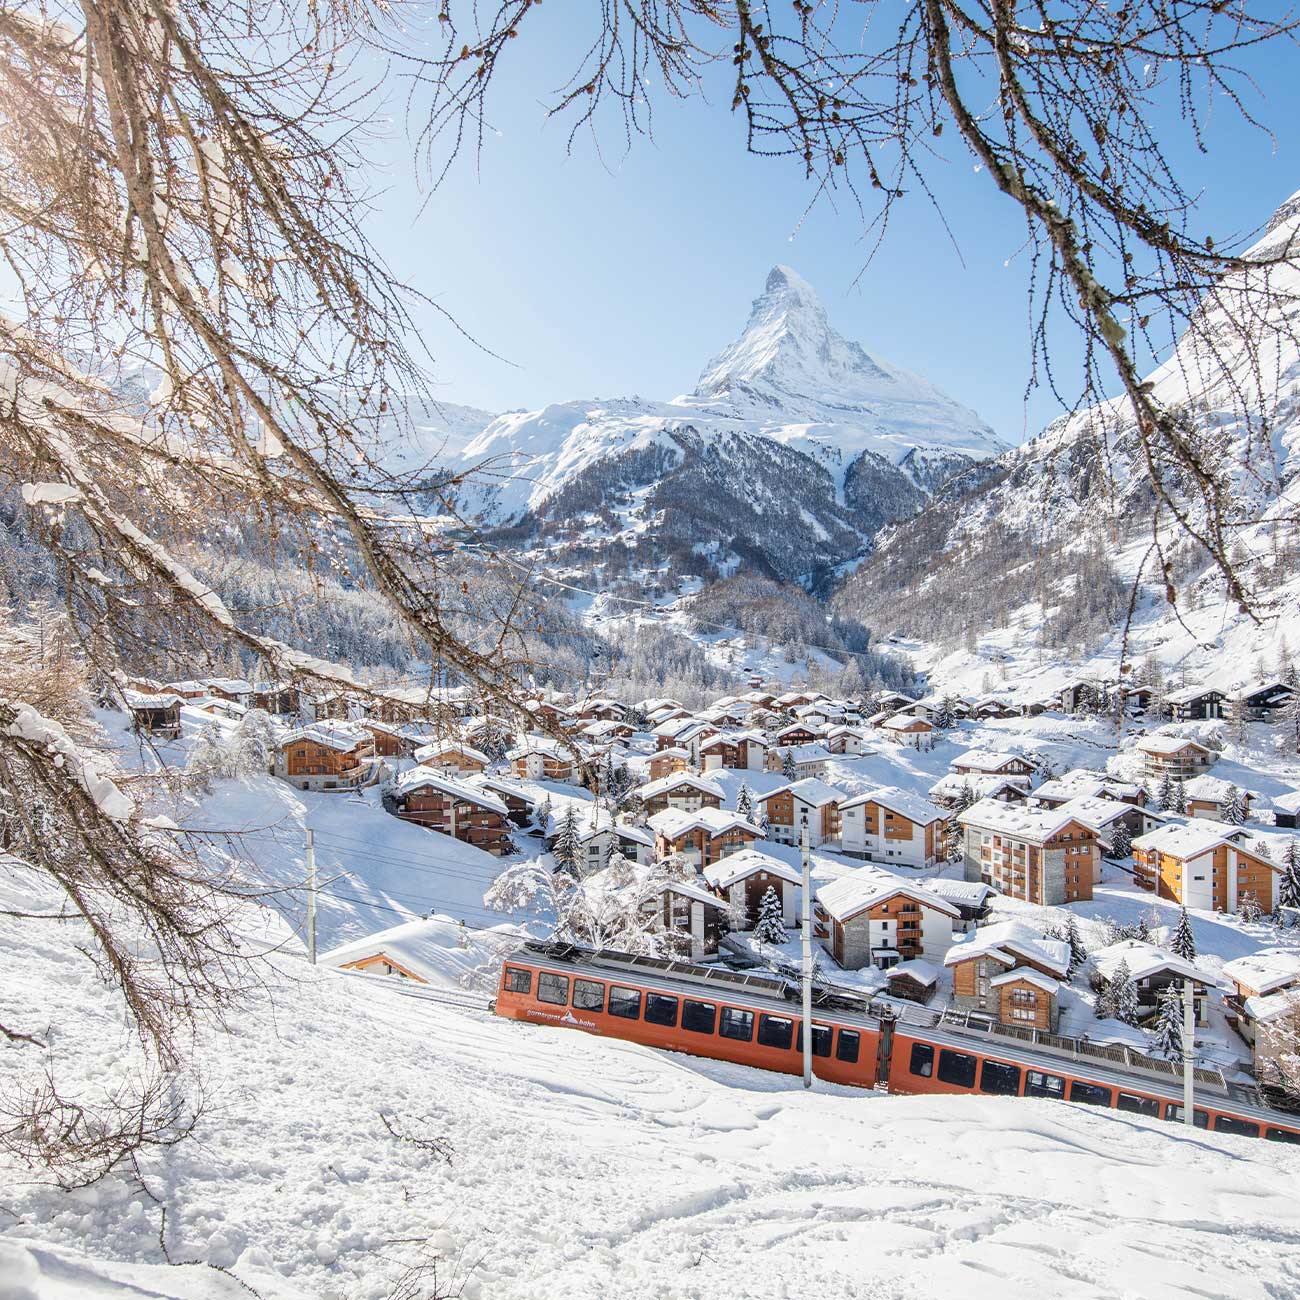 Zermatt Village and the Matterhorn. Image by Pascal Gertschen